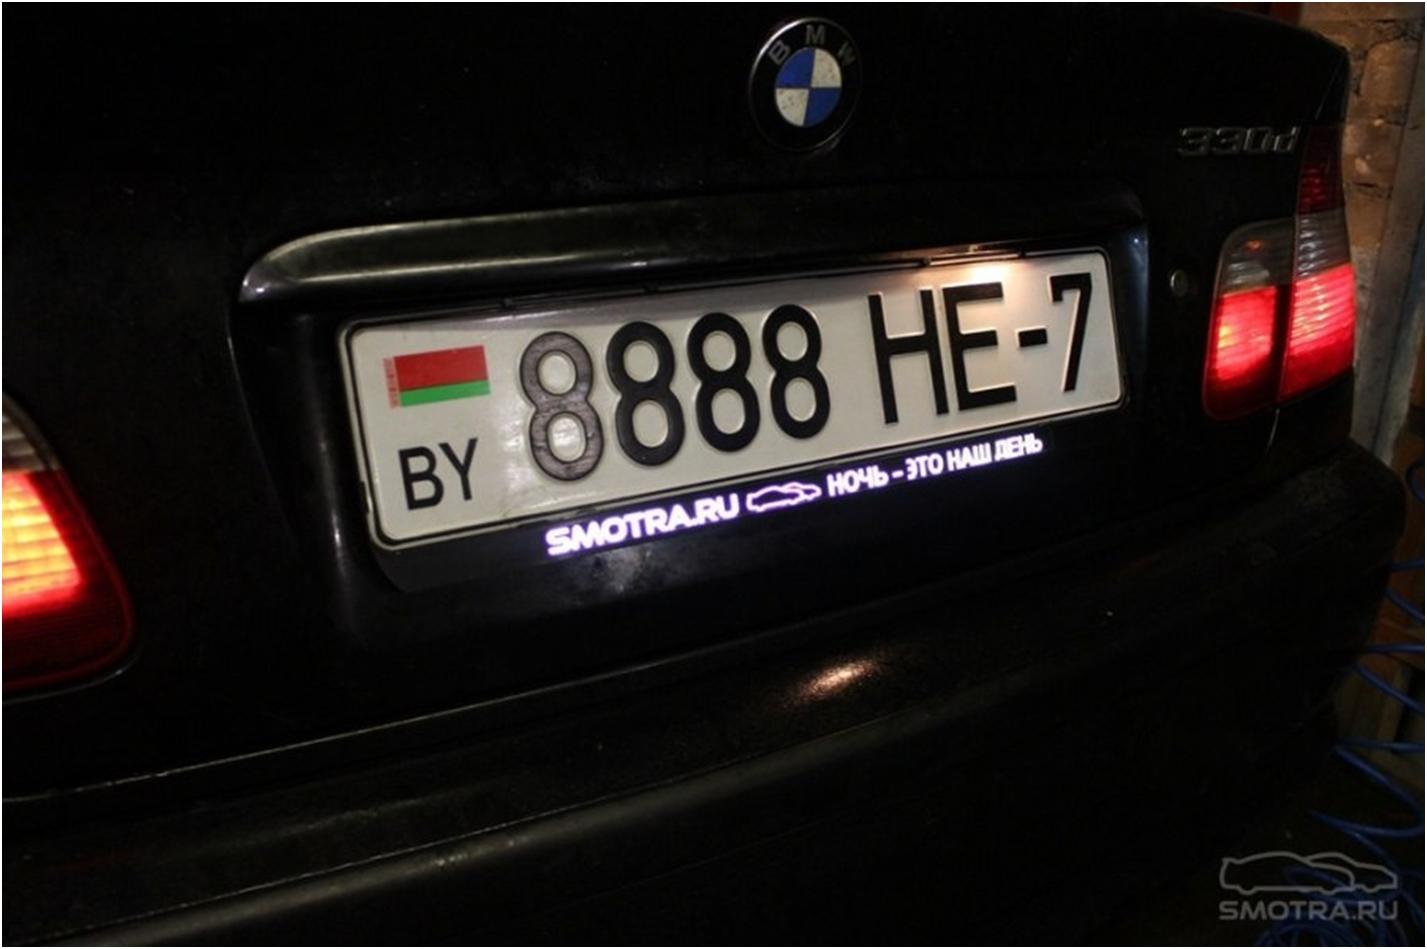 Надписи на номерах машин. Рамка номерного знака BMW. Рамка номера 2101-07 с подсветкой. Рамка номерного знака с подсветкой номера.